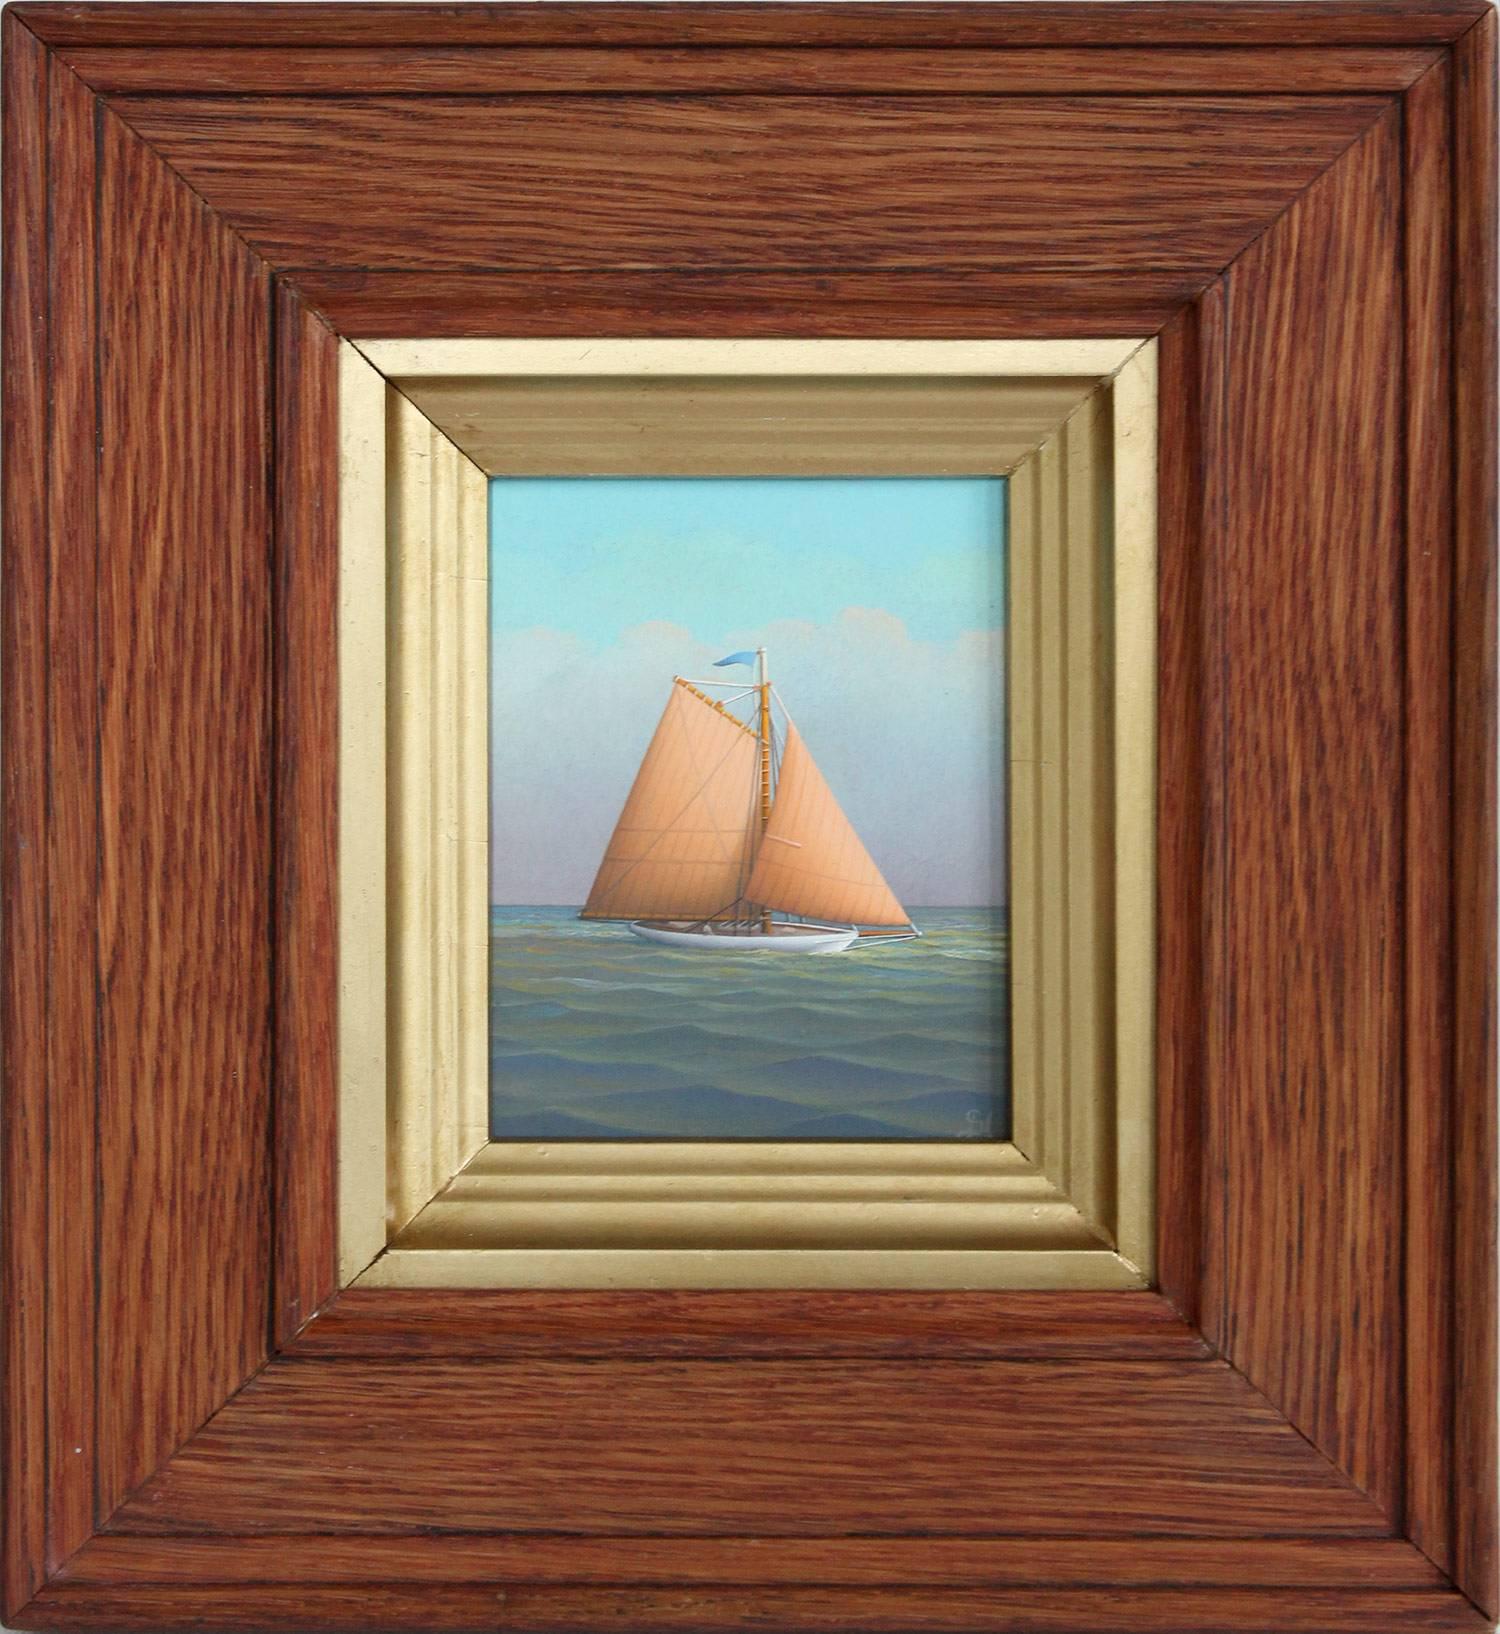 Figurative Painting George Nemethy - Peinture à l'huile réaliste "Sailing on the Caribbean" sur planche d'un voilier en mer ouverte